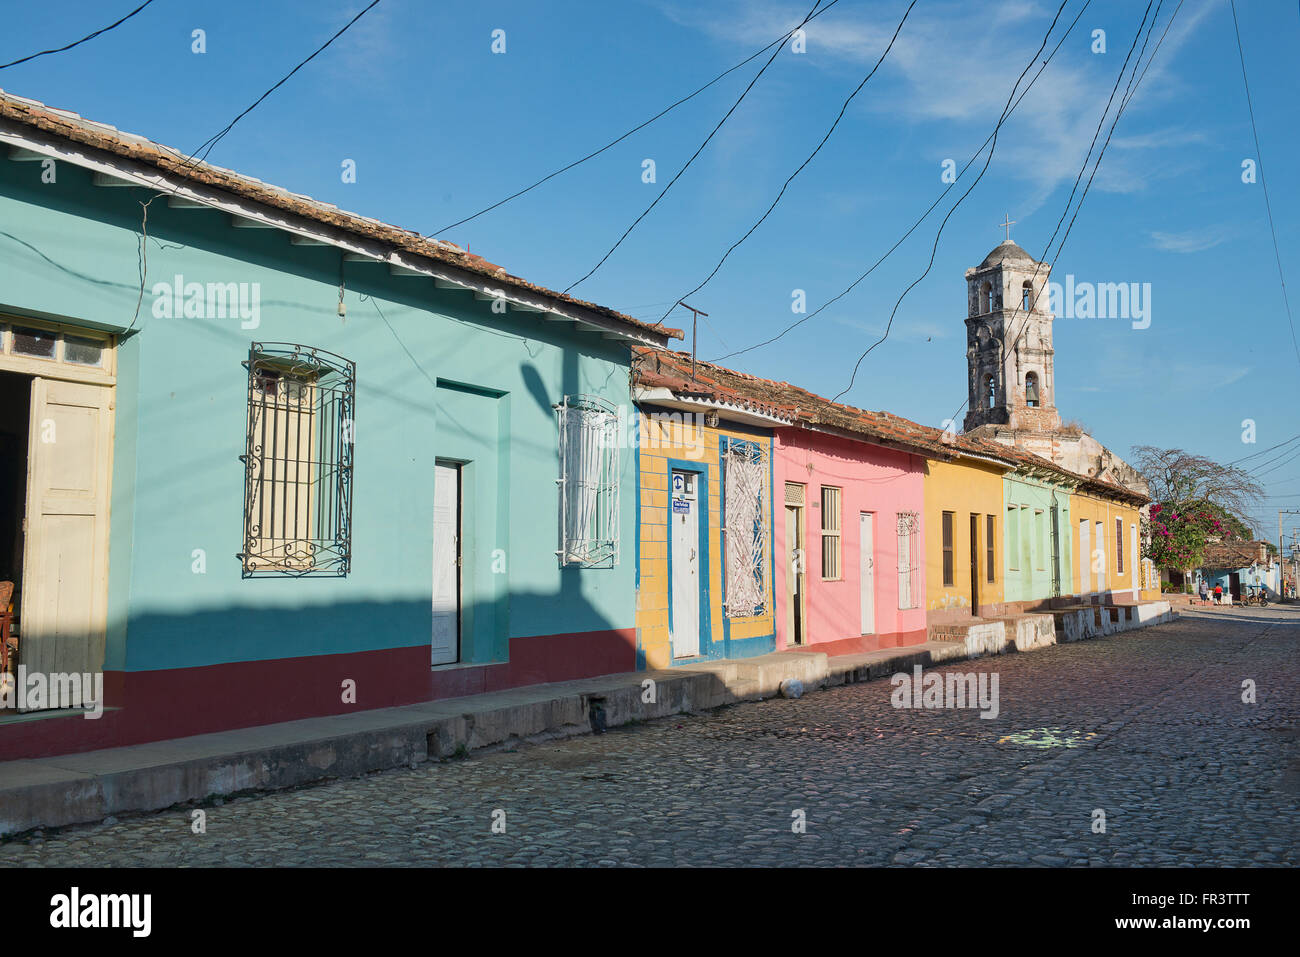 Conecte los cables de electricidad coloridas casas en una calle de la antigua ciudad colonial de Trinidad, Cuba. Foto de stock